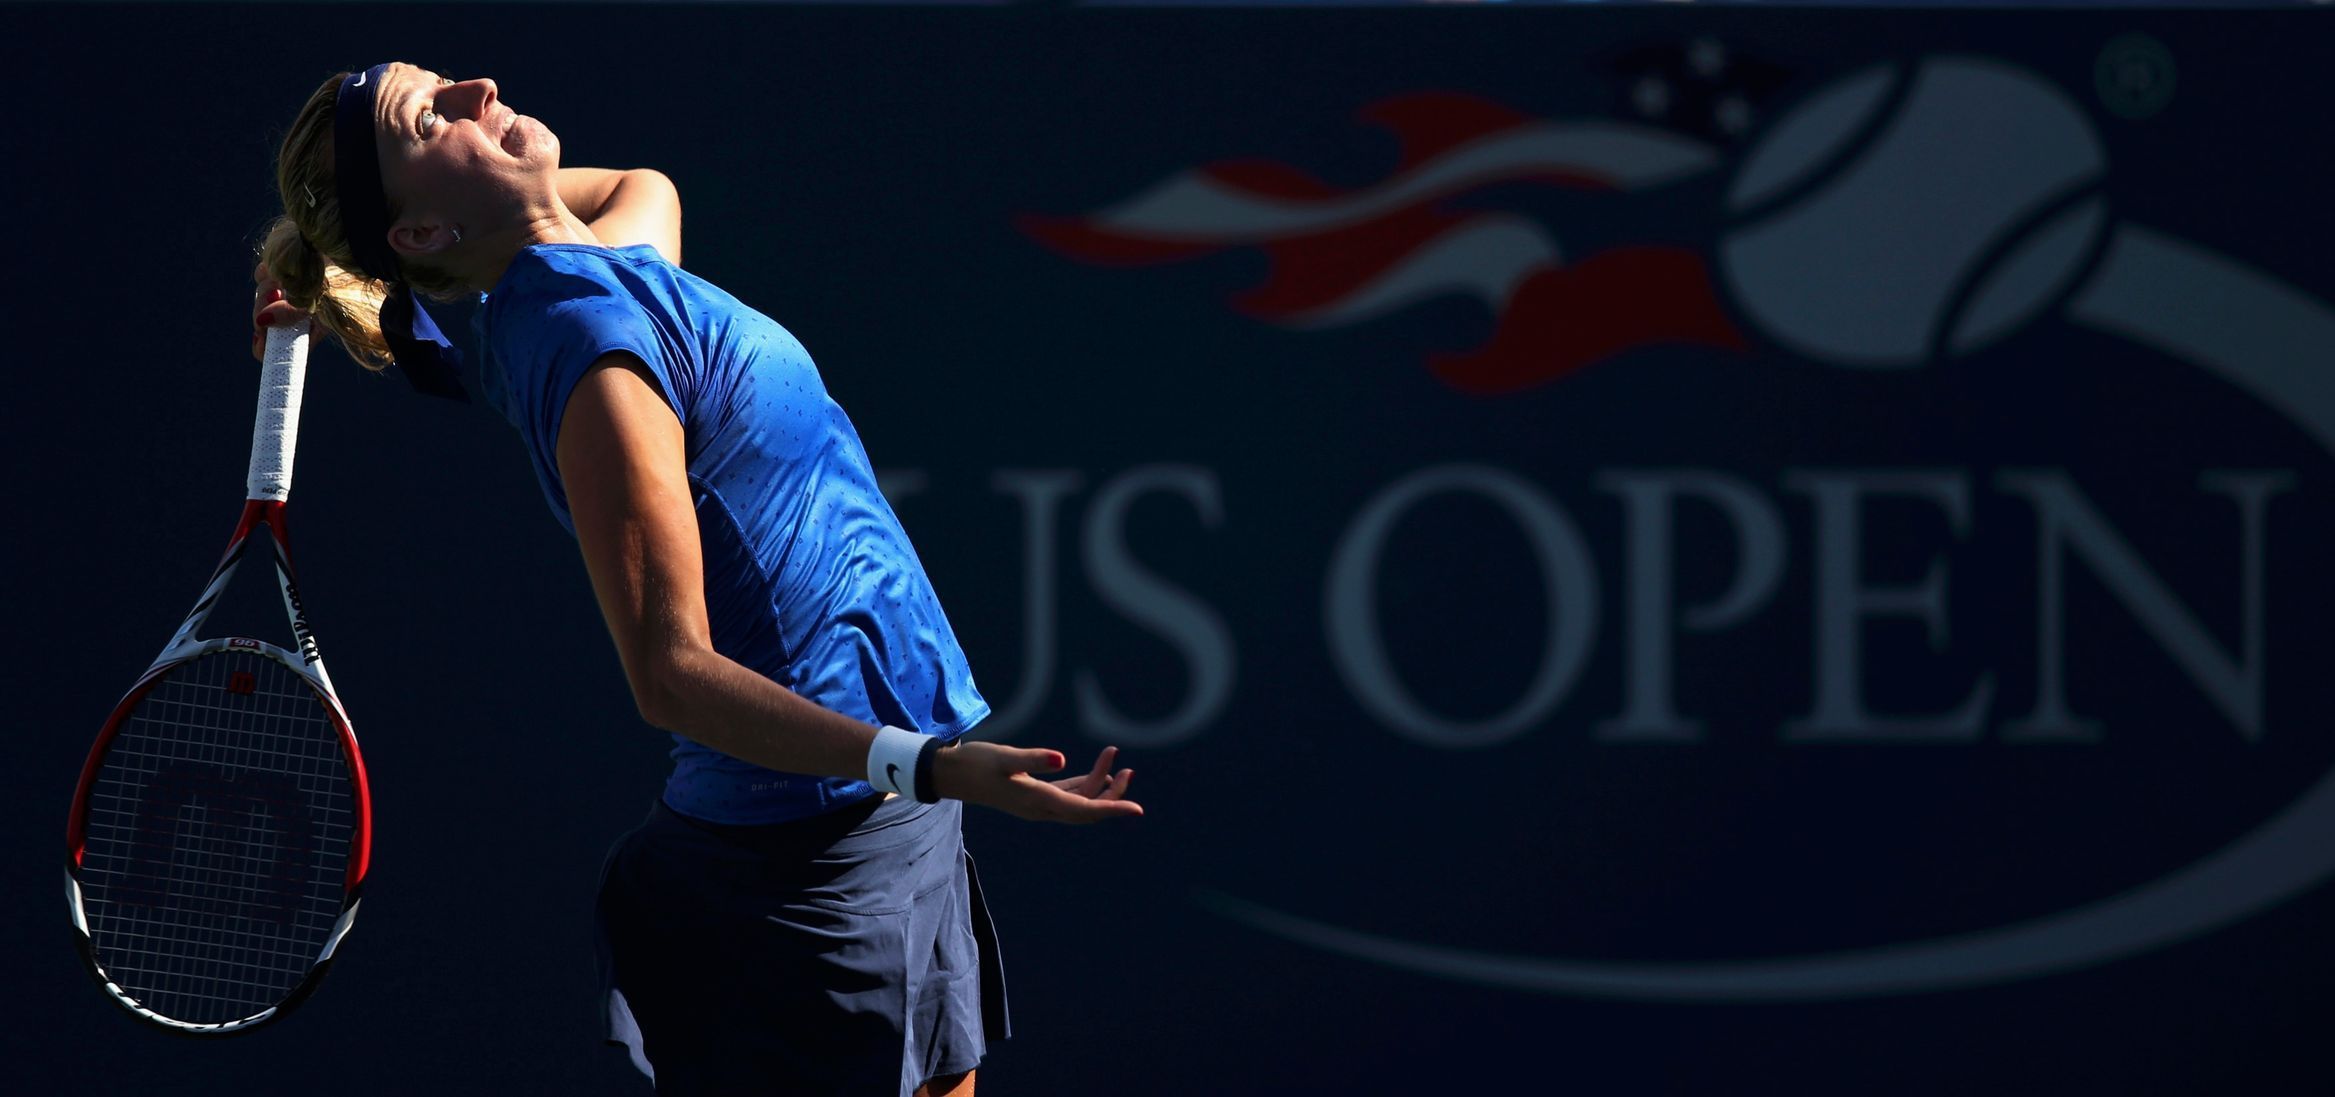 Petra Kvitová na US Open 2014